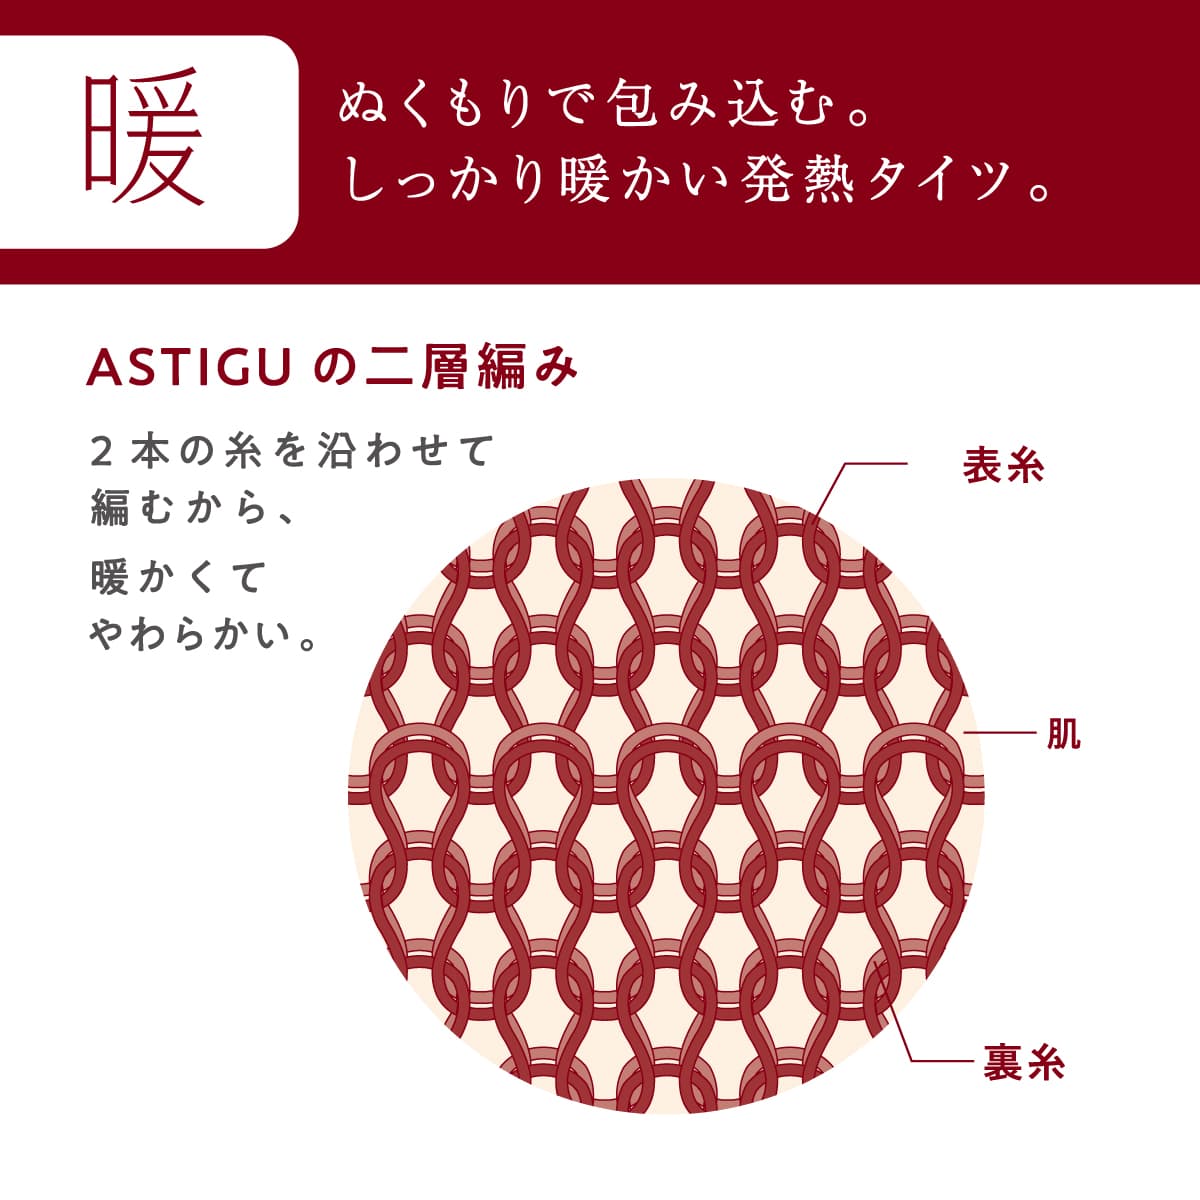 ASTIGU 【暖】心地よいぬくもり 110デニールタイツ